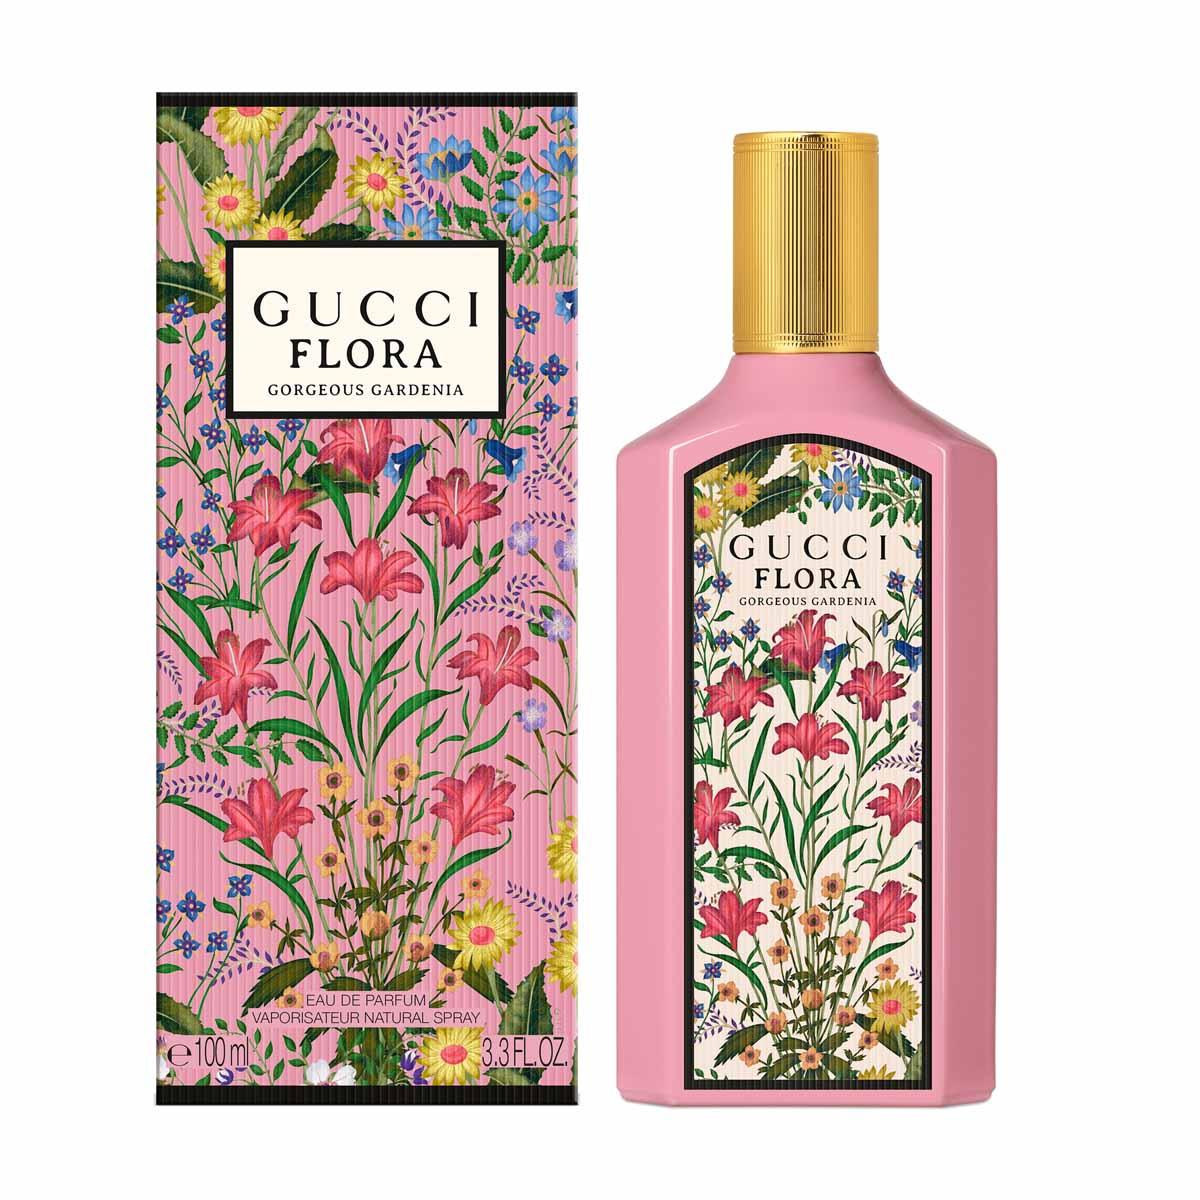 FLORA GORGEOUS GARDENIA - Perfum Elite